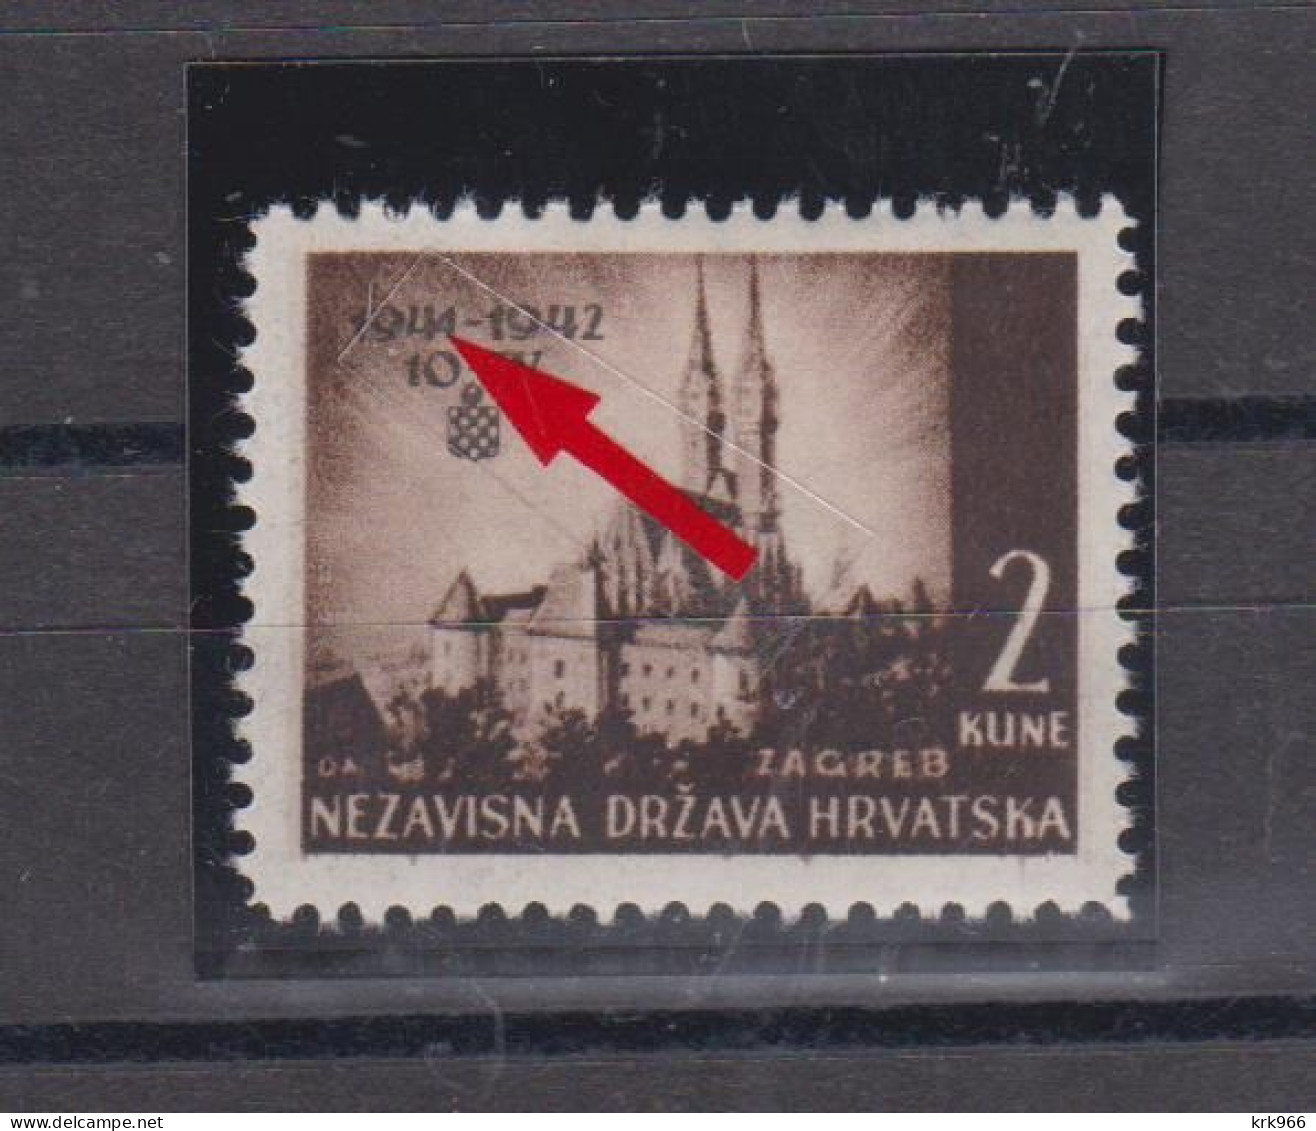 CROATIA WW II, I Aniv 1942 2 Kn Plate Error Hinged - Croatia